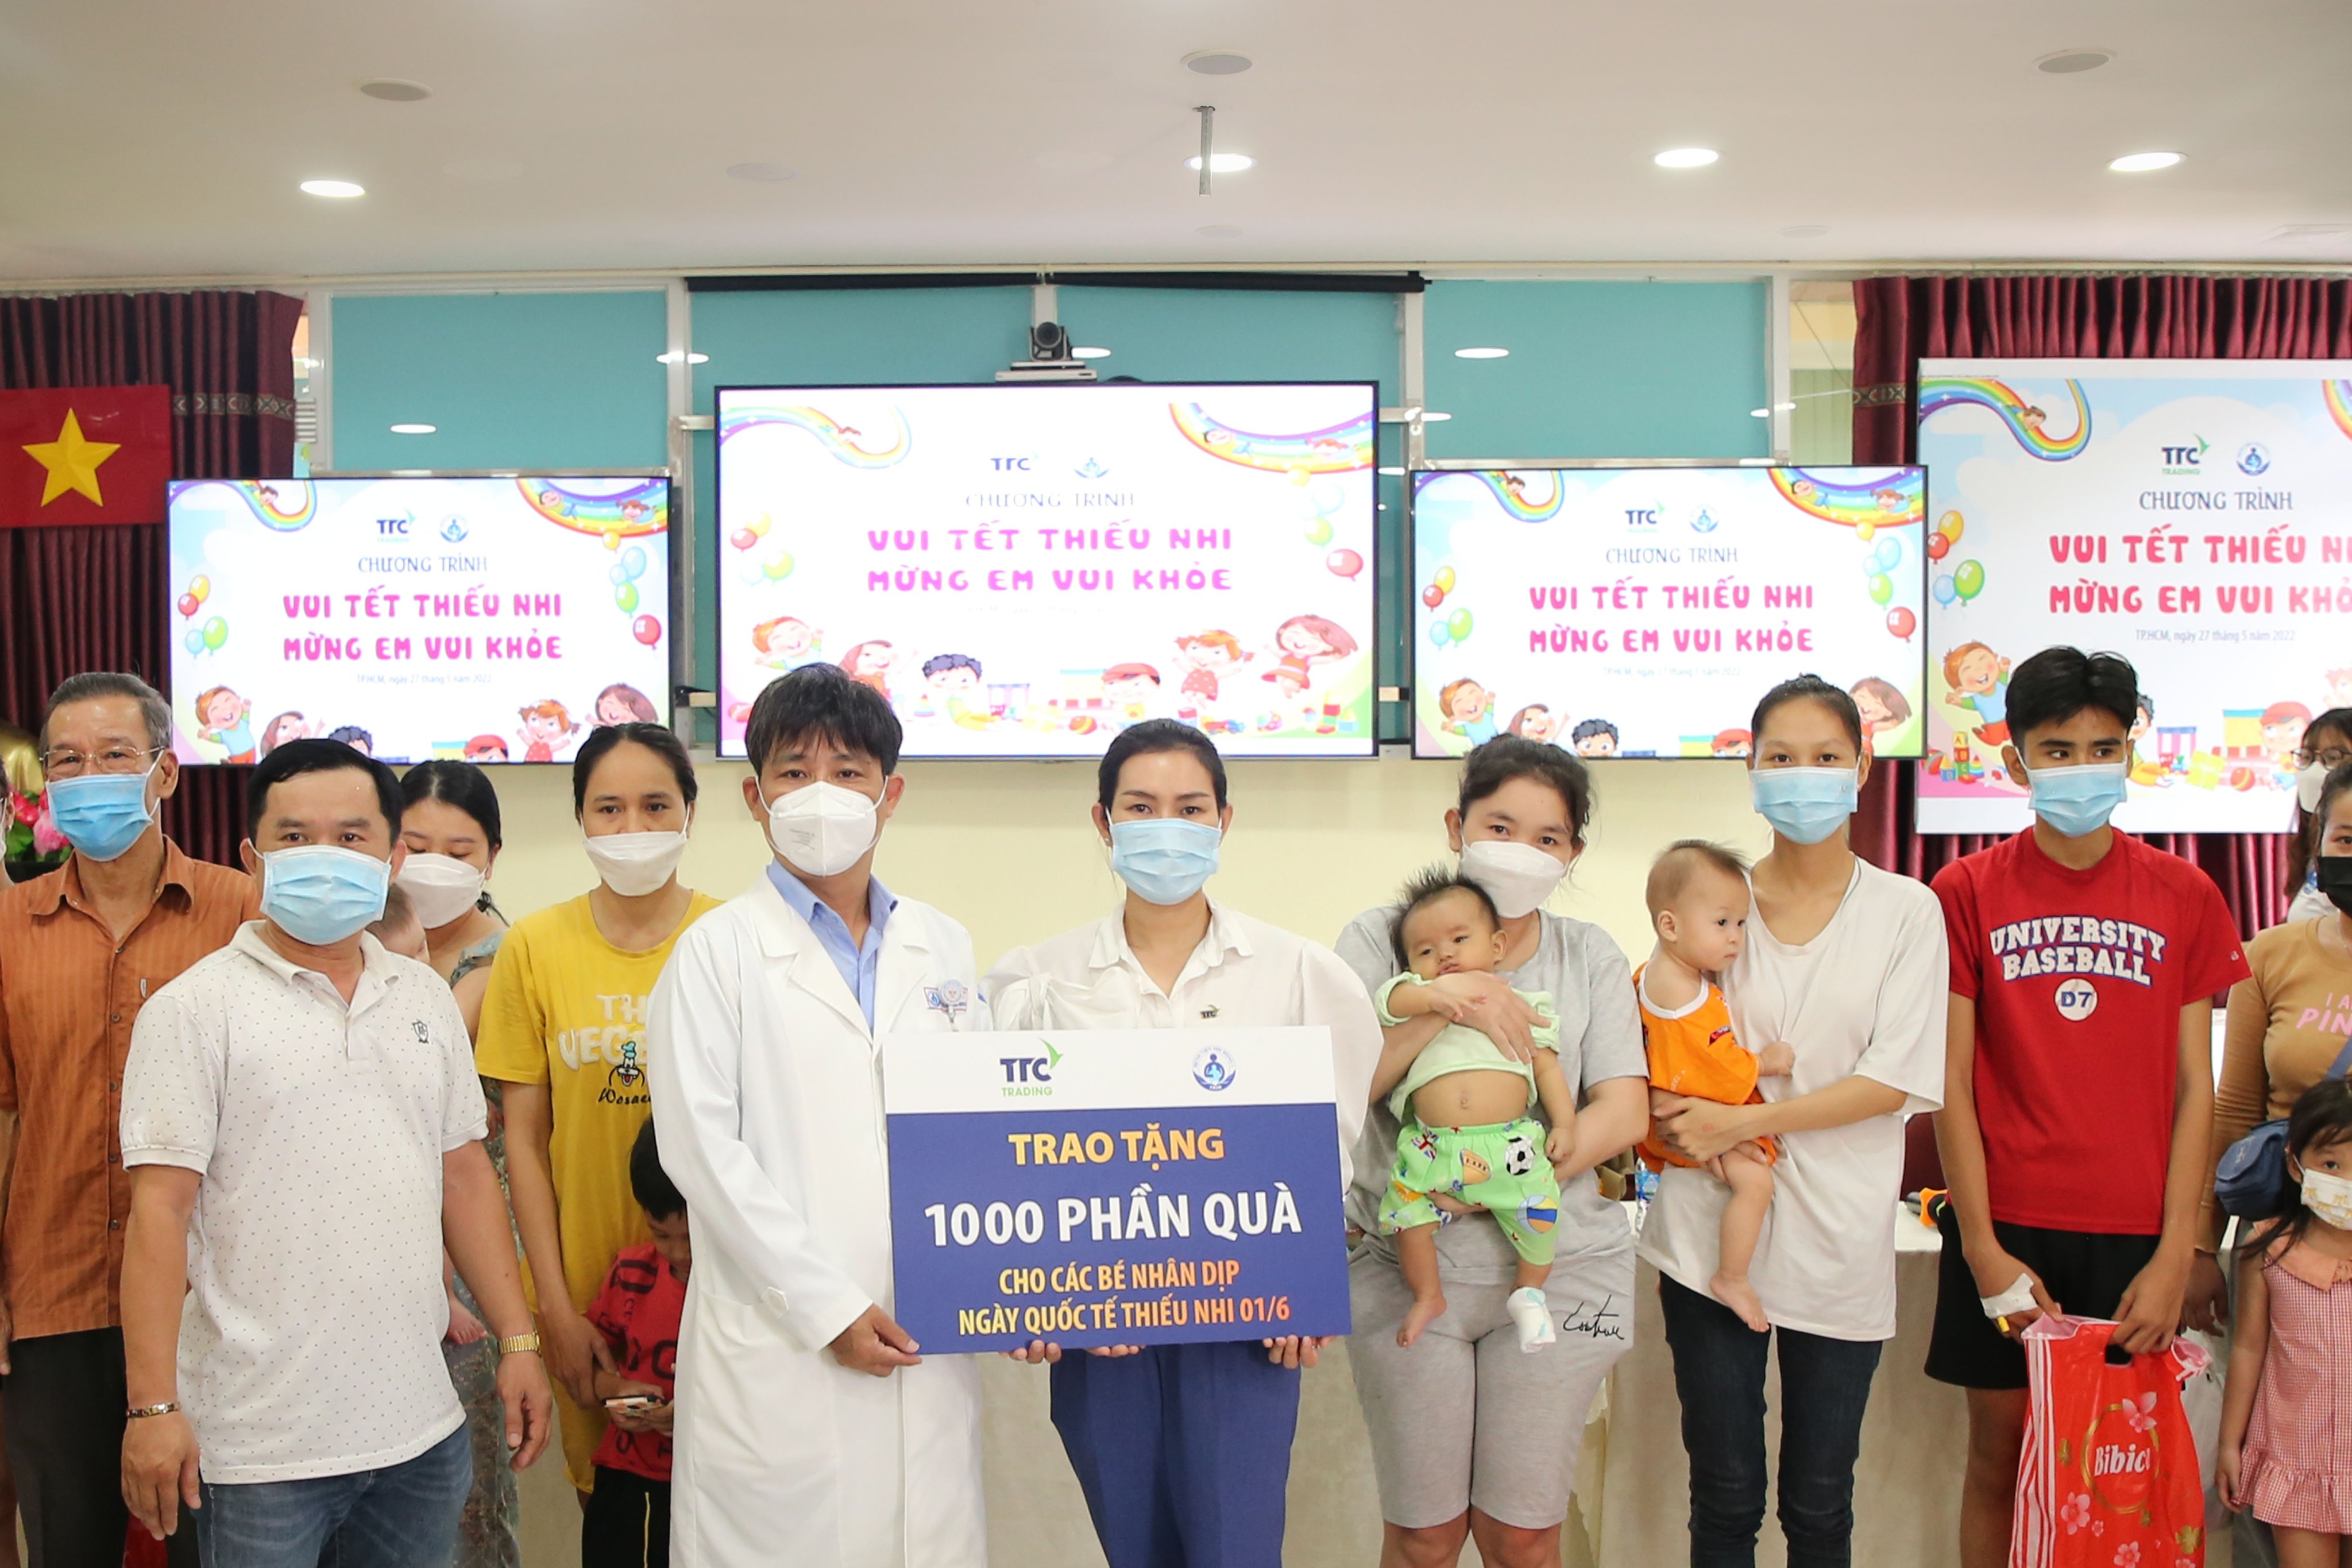 TTC TRADING tổ chức chương trình trao tặng 1000 phần quà cho các bé tại Bệnh viện Nhi Đồng 1 - 27.5.2022